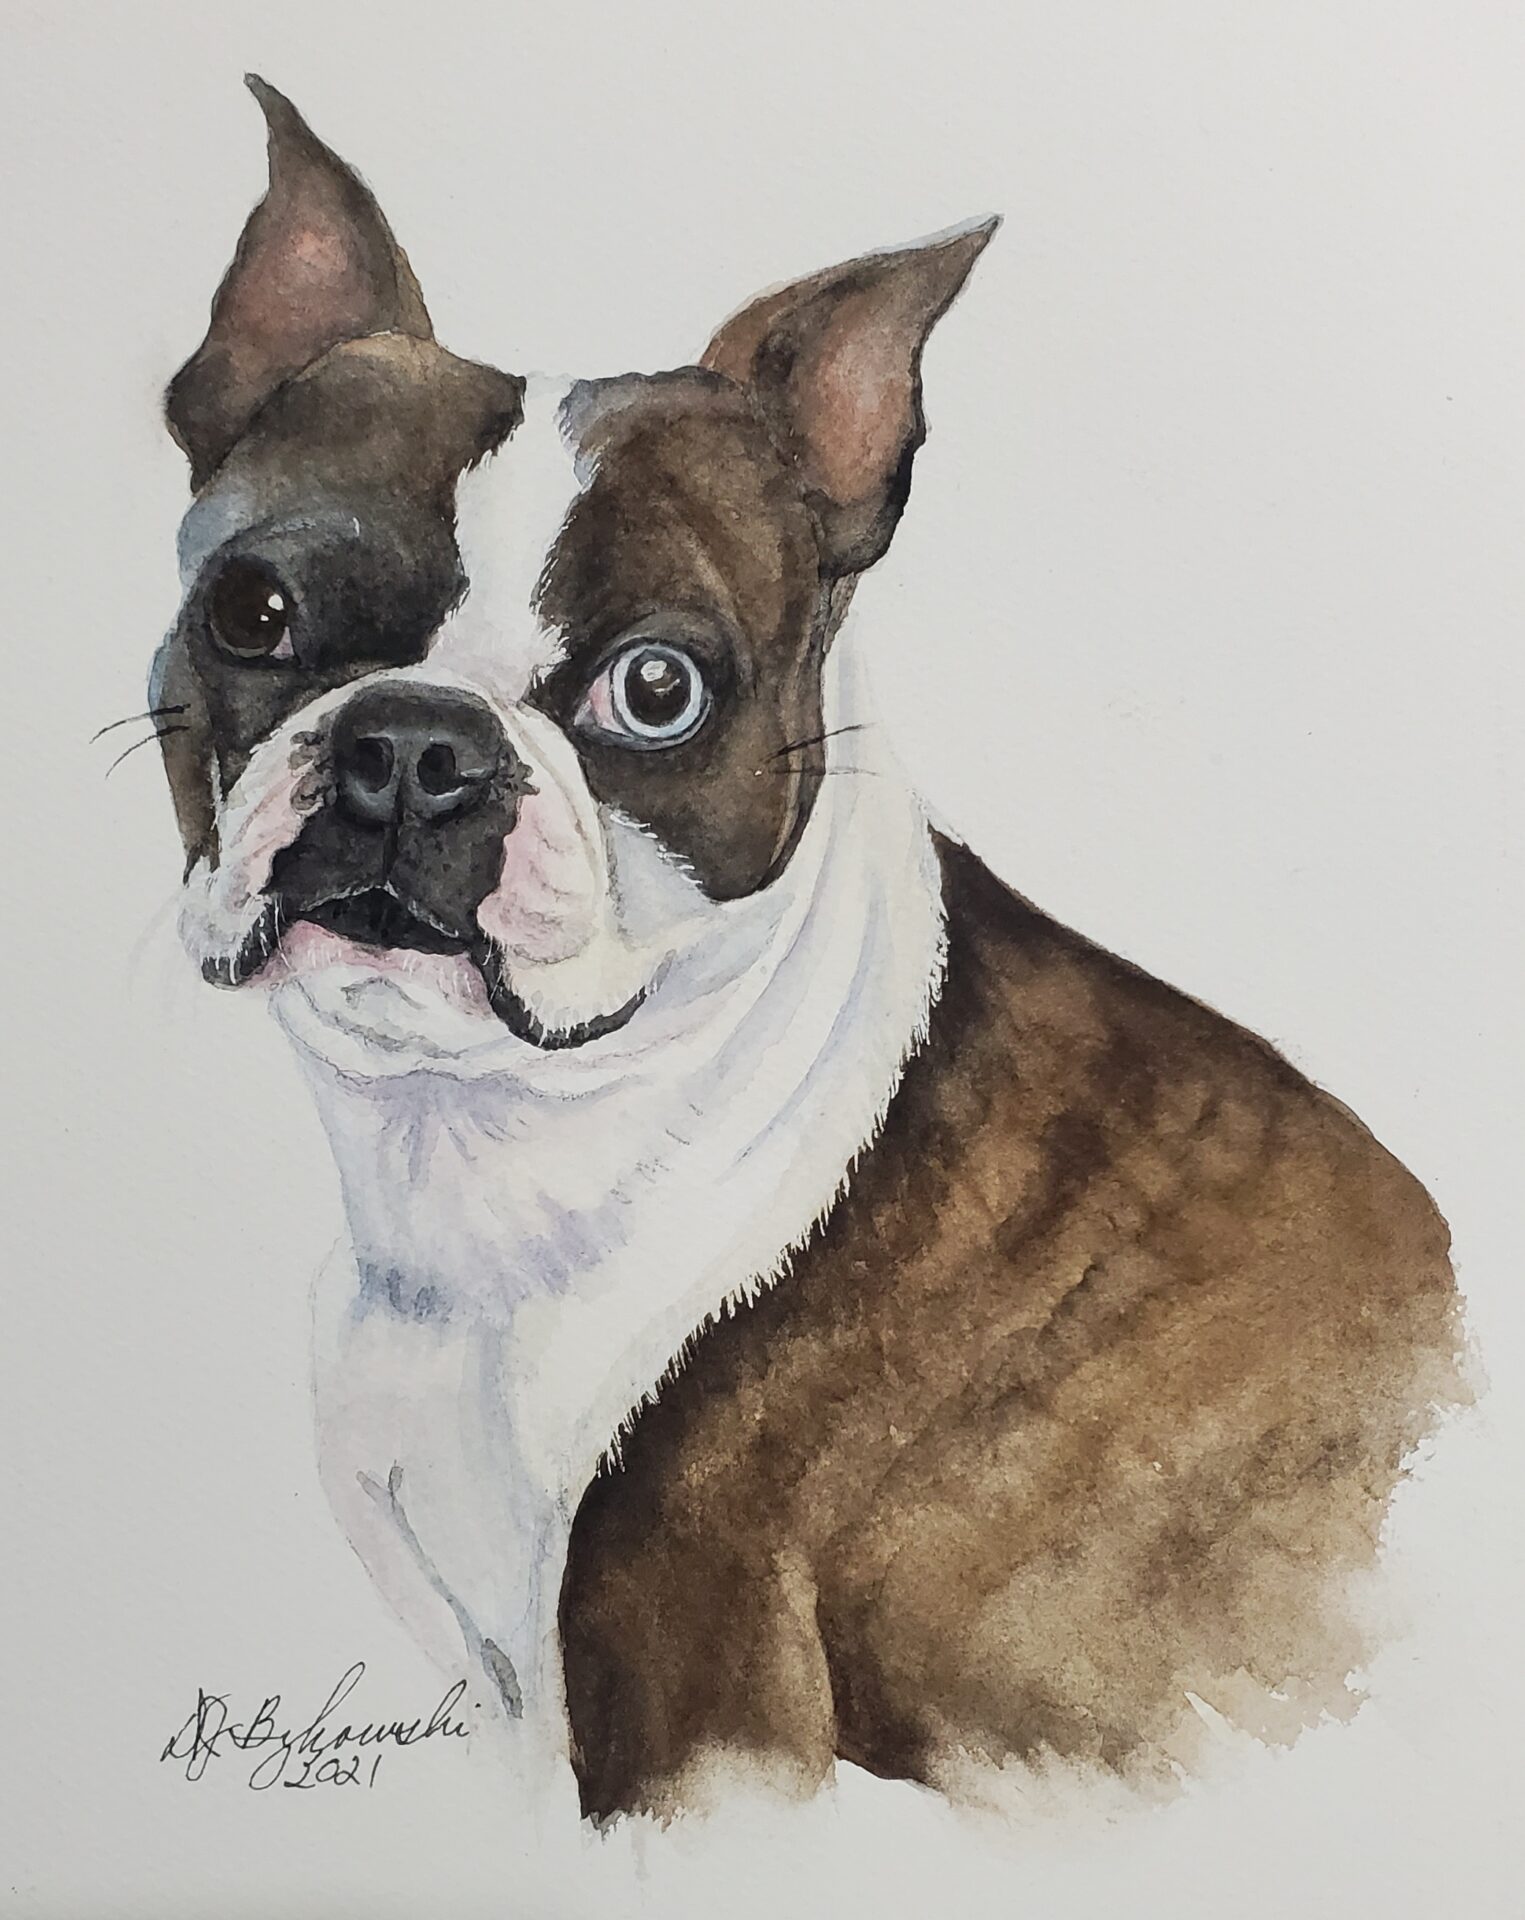 Closeup shot of painting art of a dog